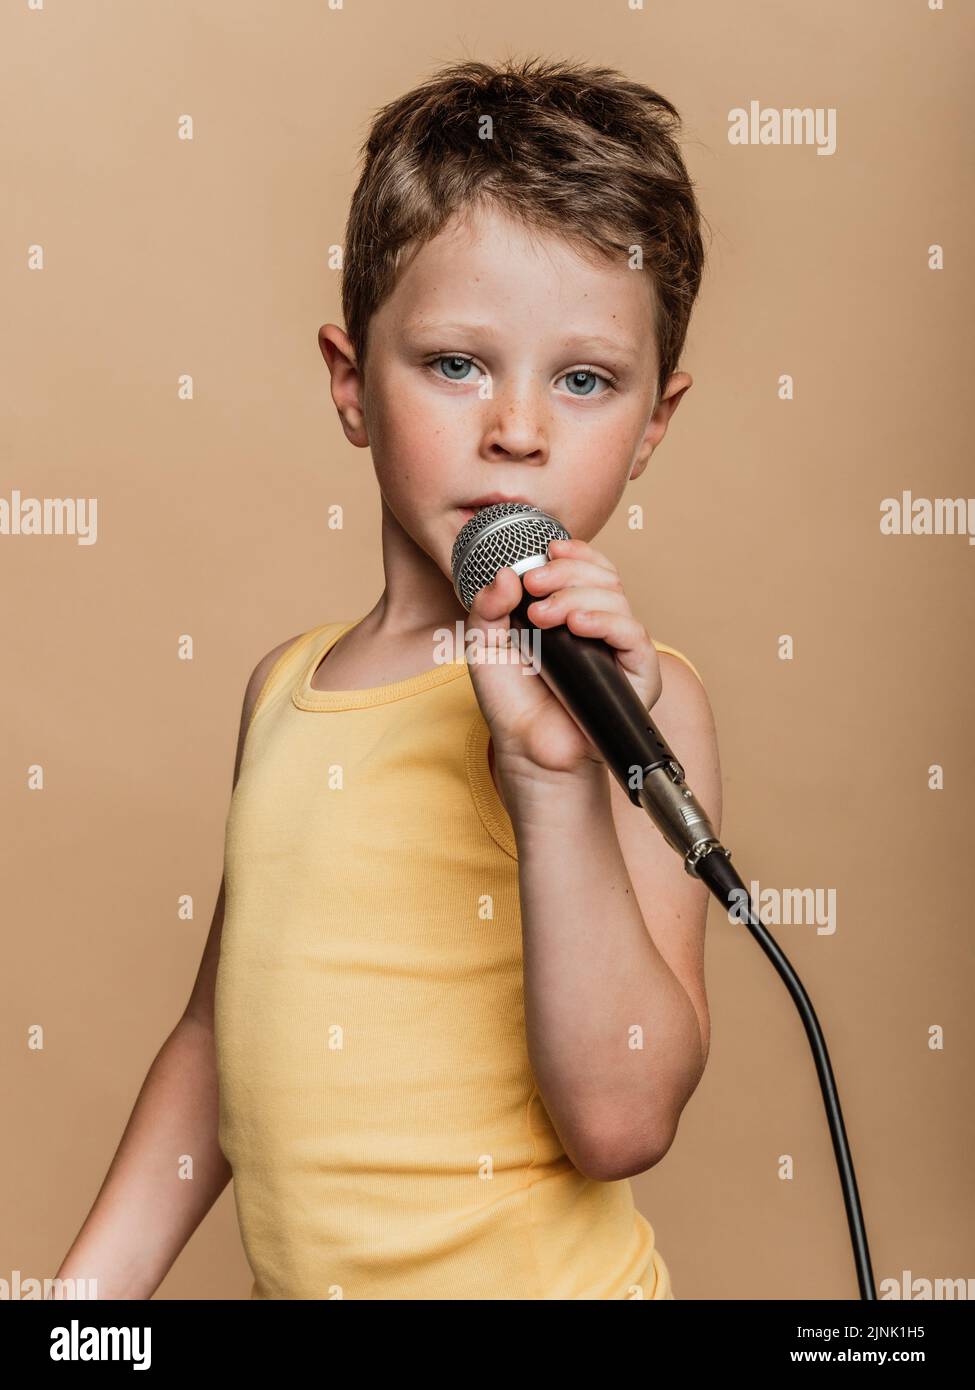 Micrófono para niños fotografías e imágenes de alta resolución - Página 3 -  Alamy